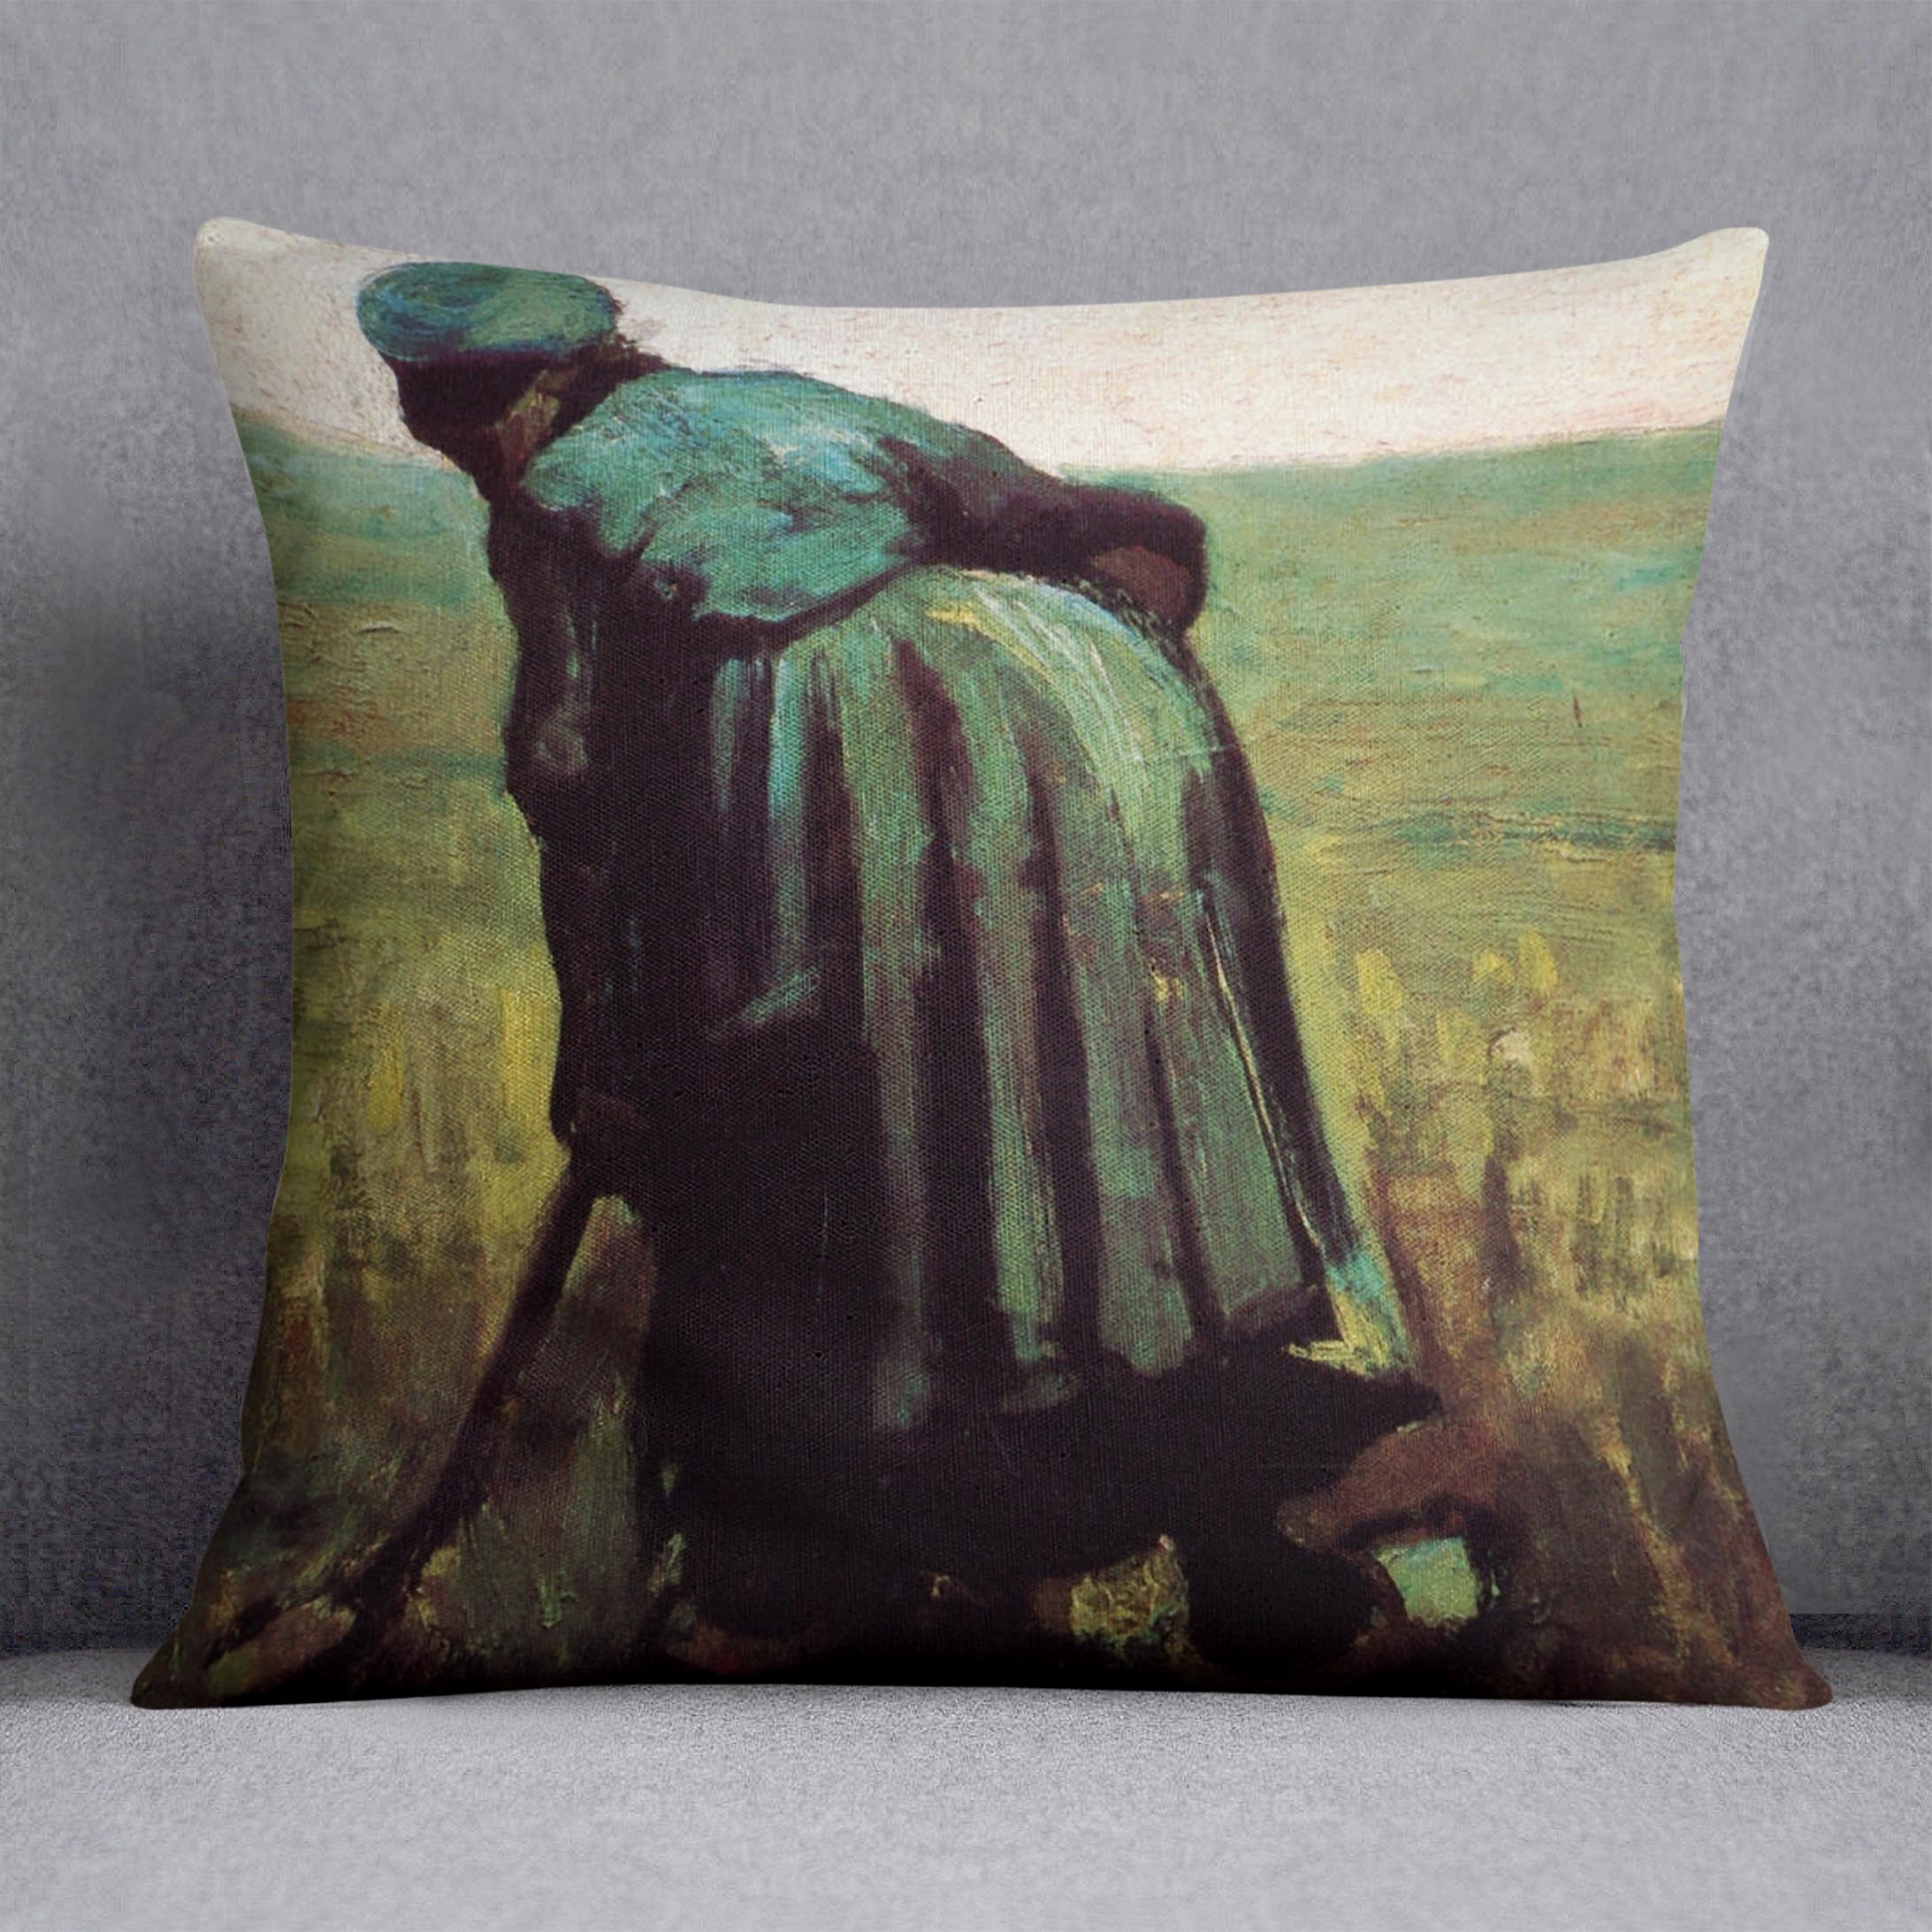 Peasant Woman Digging by Van Gogh Cushion